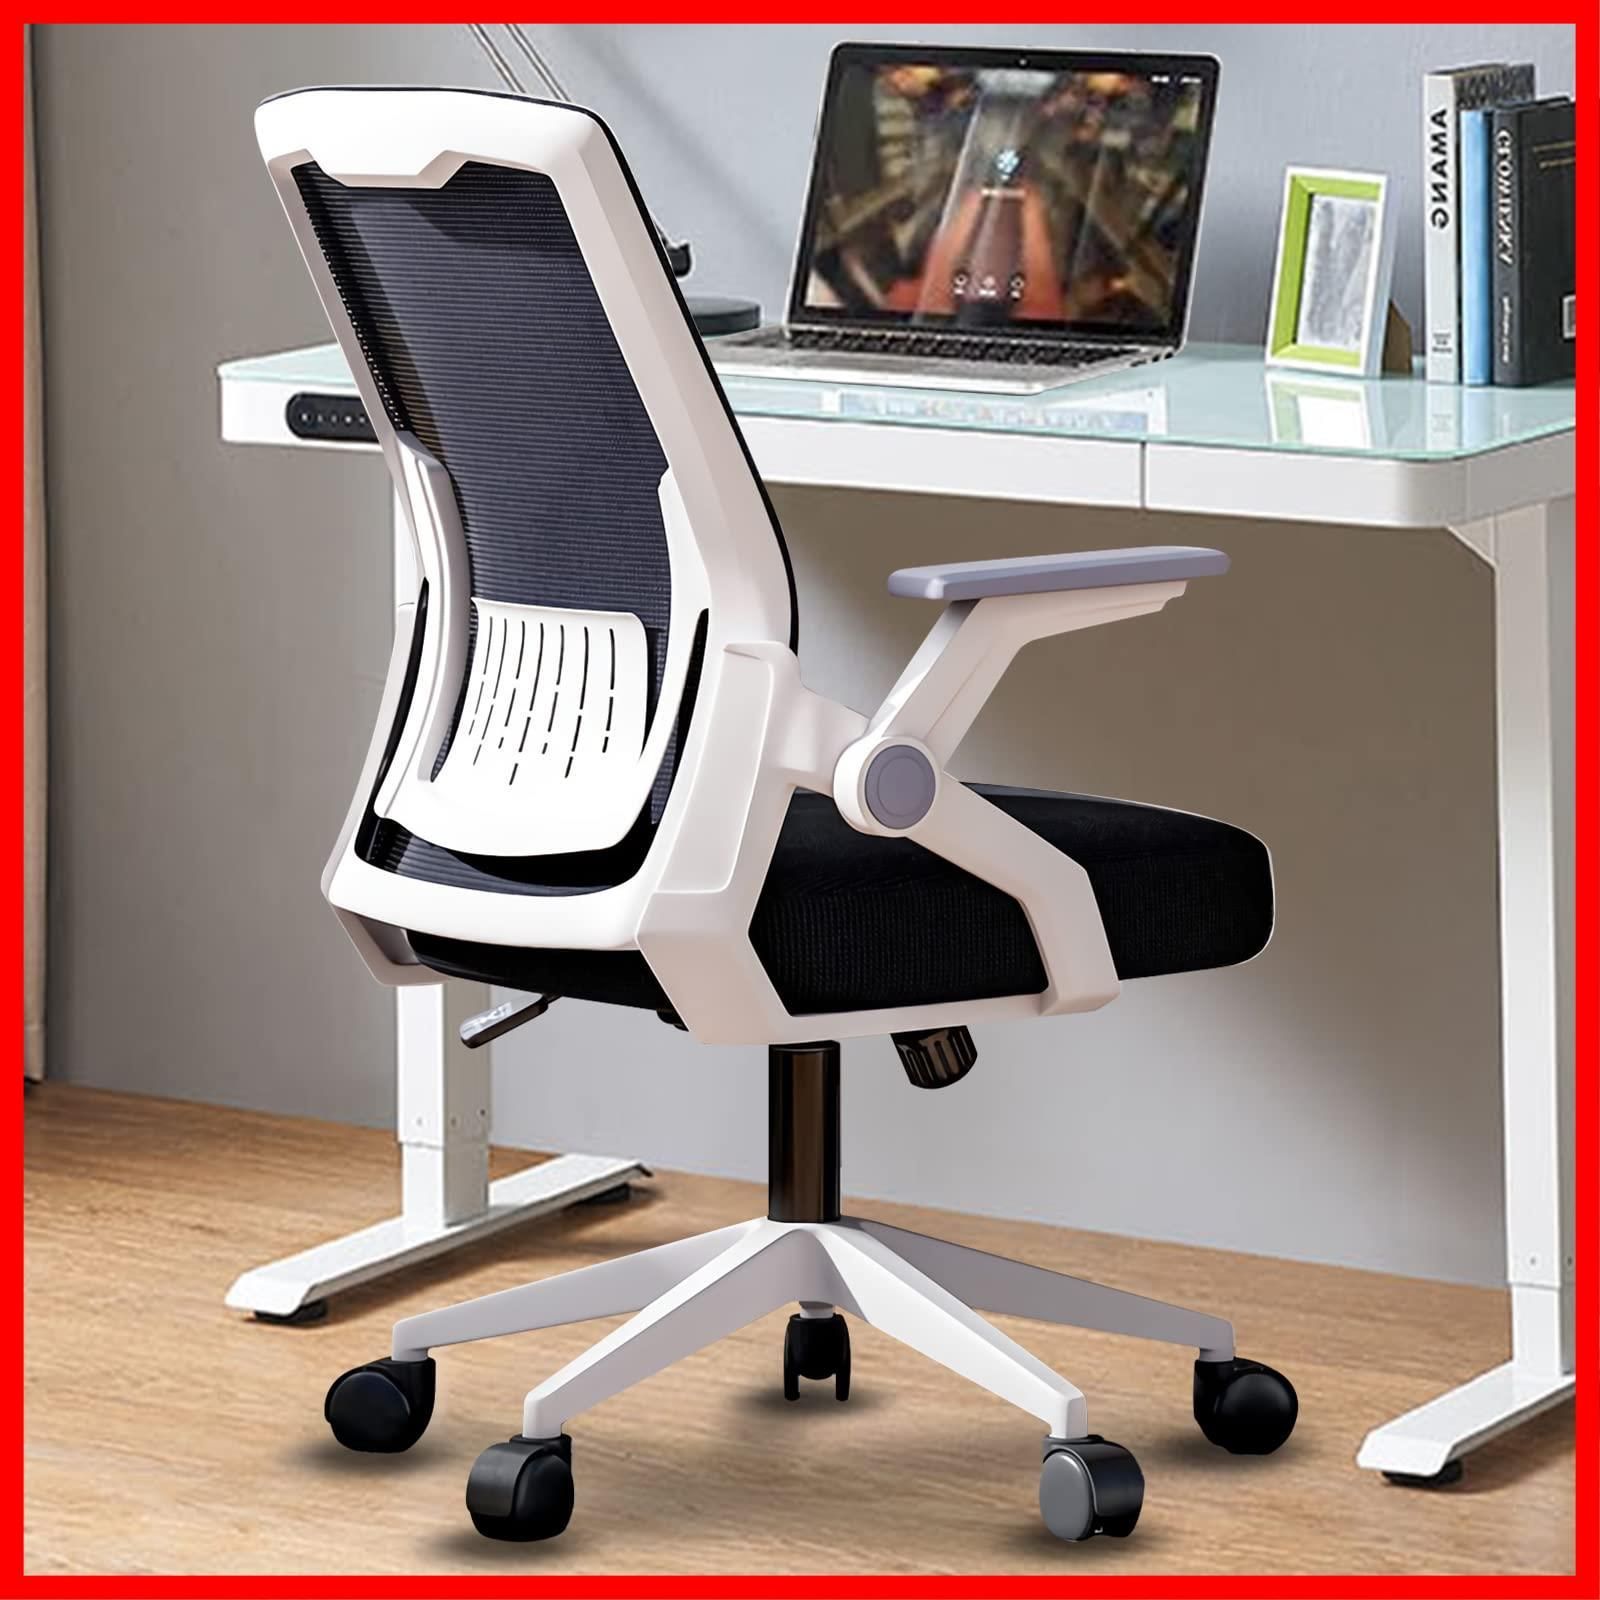 材質強化ナイロン樹脂ベースオフィスチェア 椅子 テレワーク 疲れない デスクチェア パソコンチェア ワーク